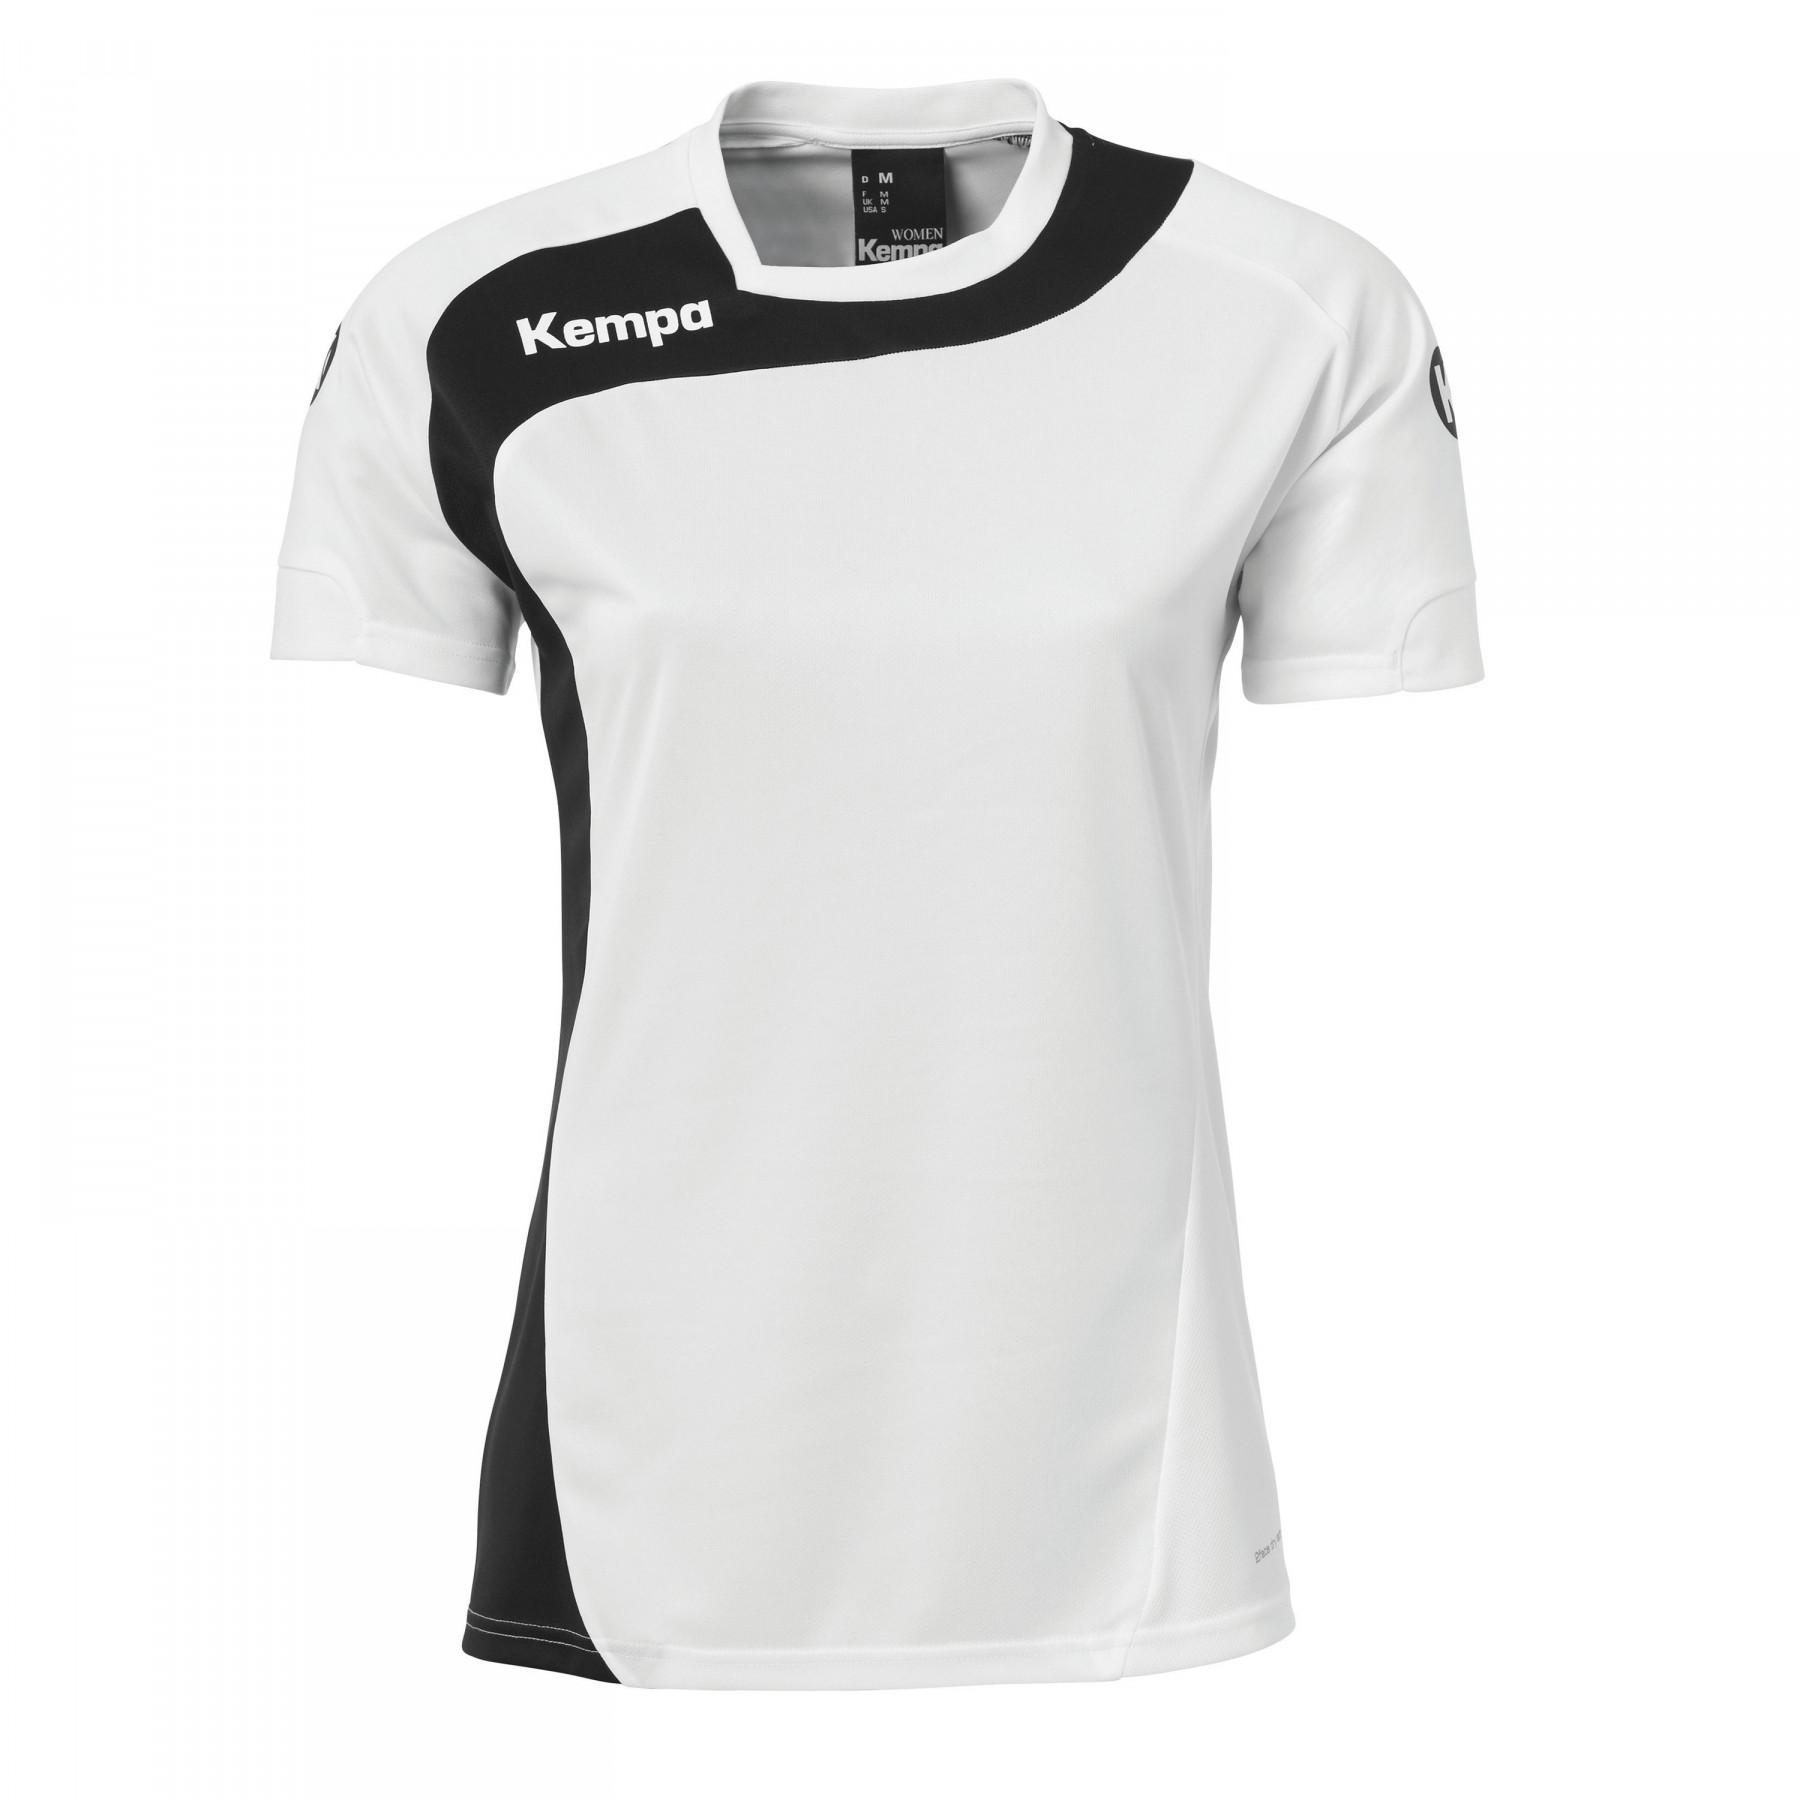 Women's jersey Kempa Peak 